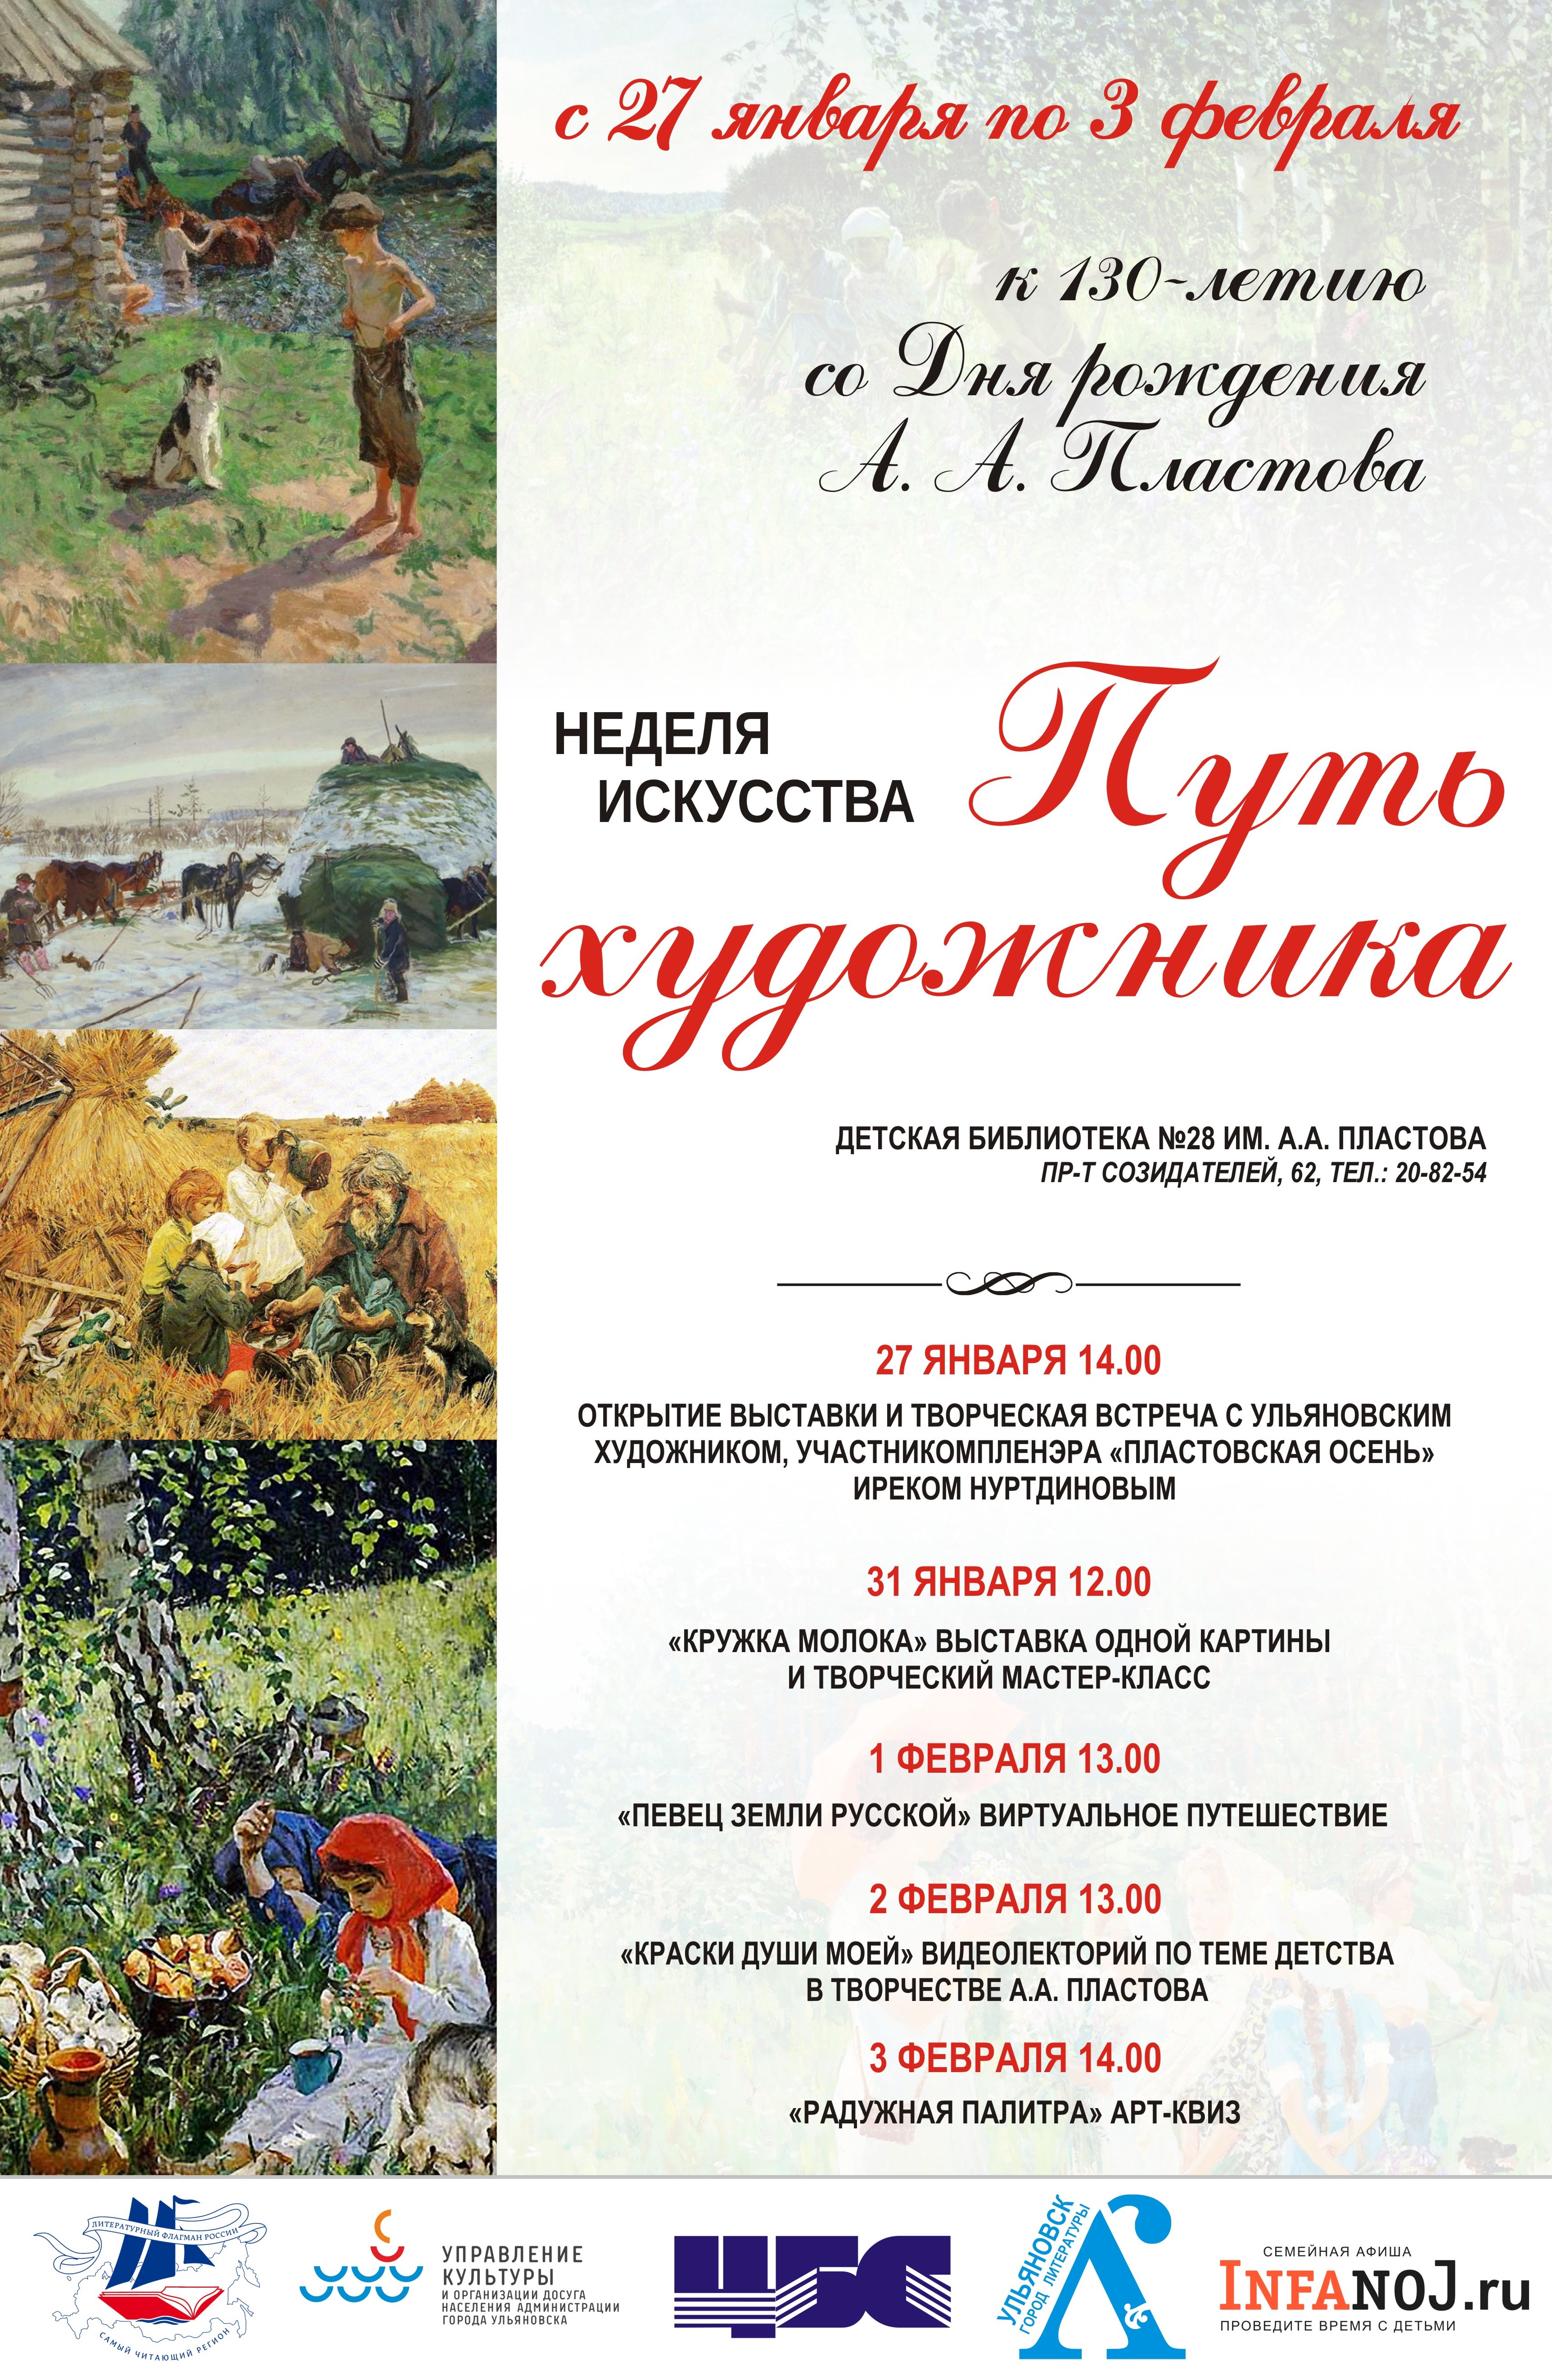 Ульяновцев приглашают на Неделю искусства.